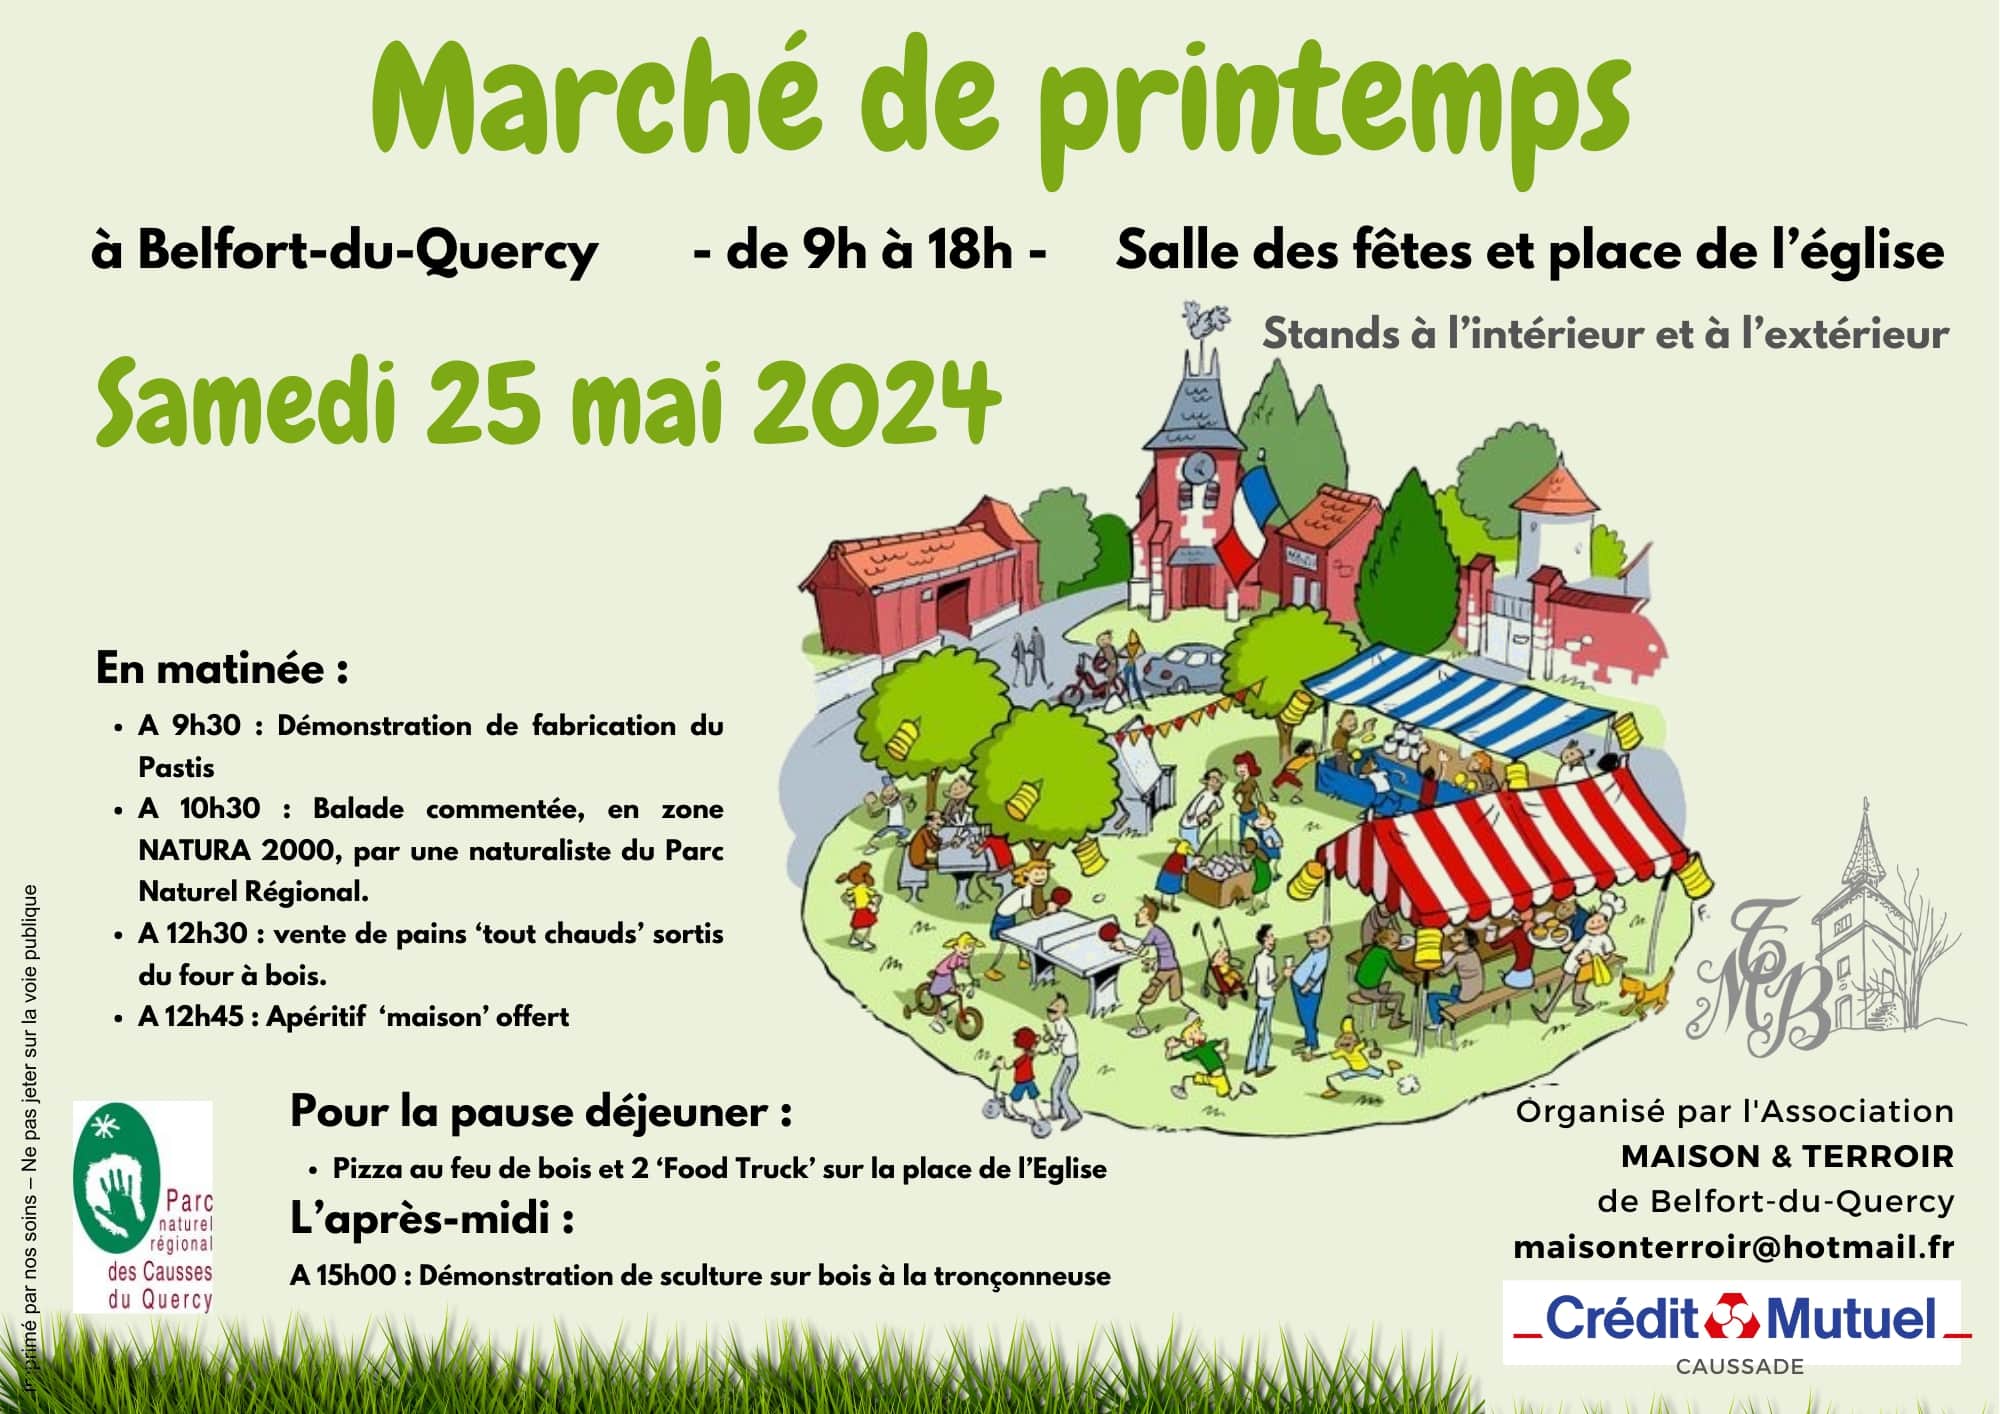 Marché de printemps à Belfort-du-Quercy Le 25 mai 2024